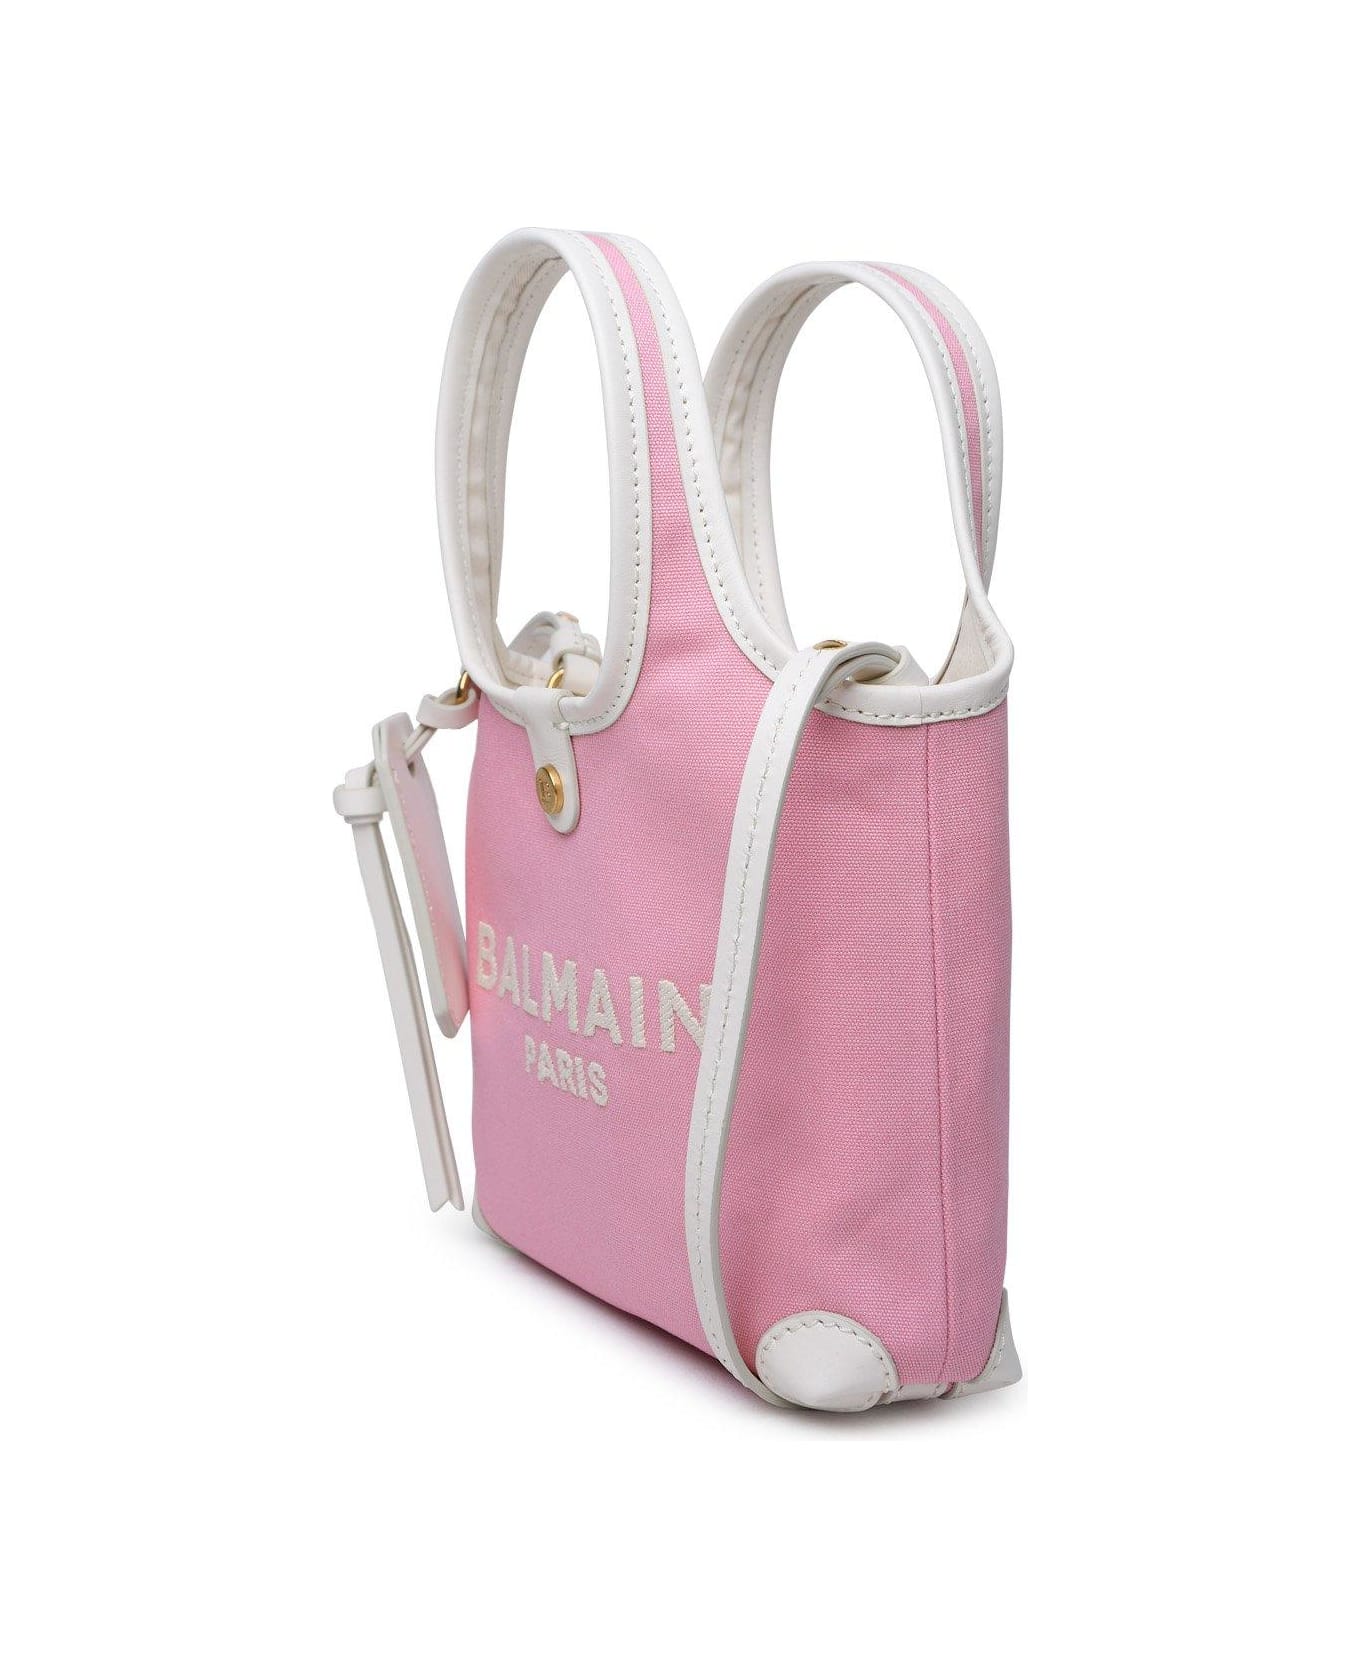 Balmain B-army Top Handle Bag - Rosa